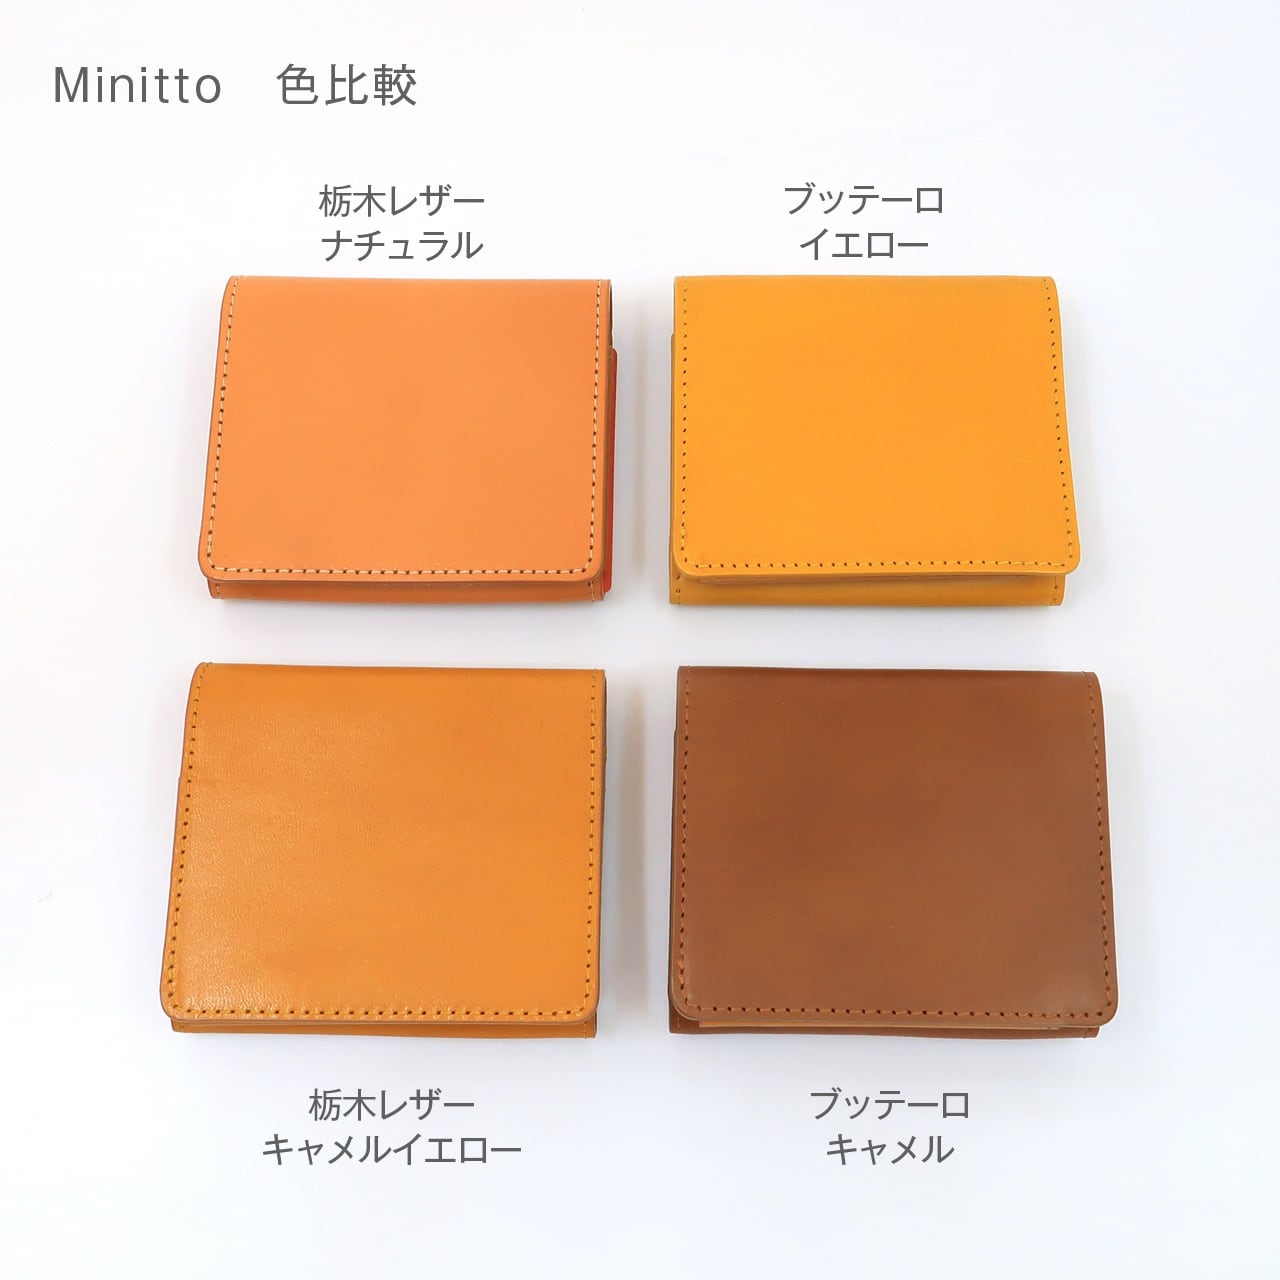 日本最小クラス】二つ折り財布『Minitto』 栃木レザー仕様 | monova